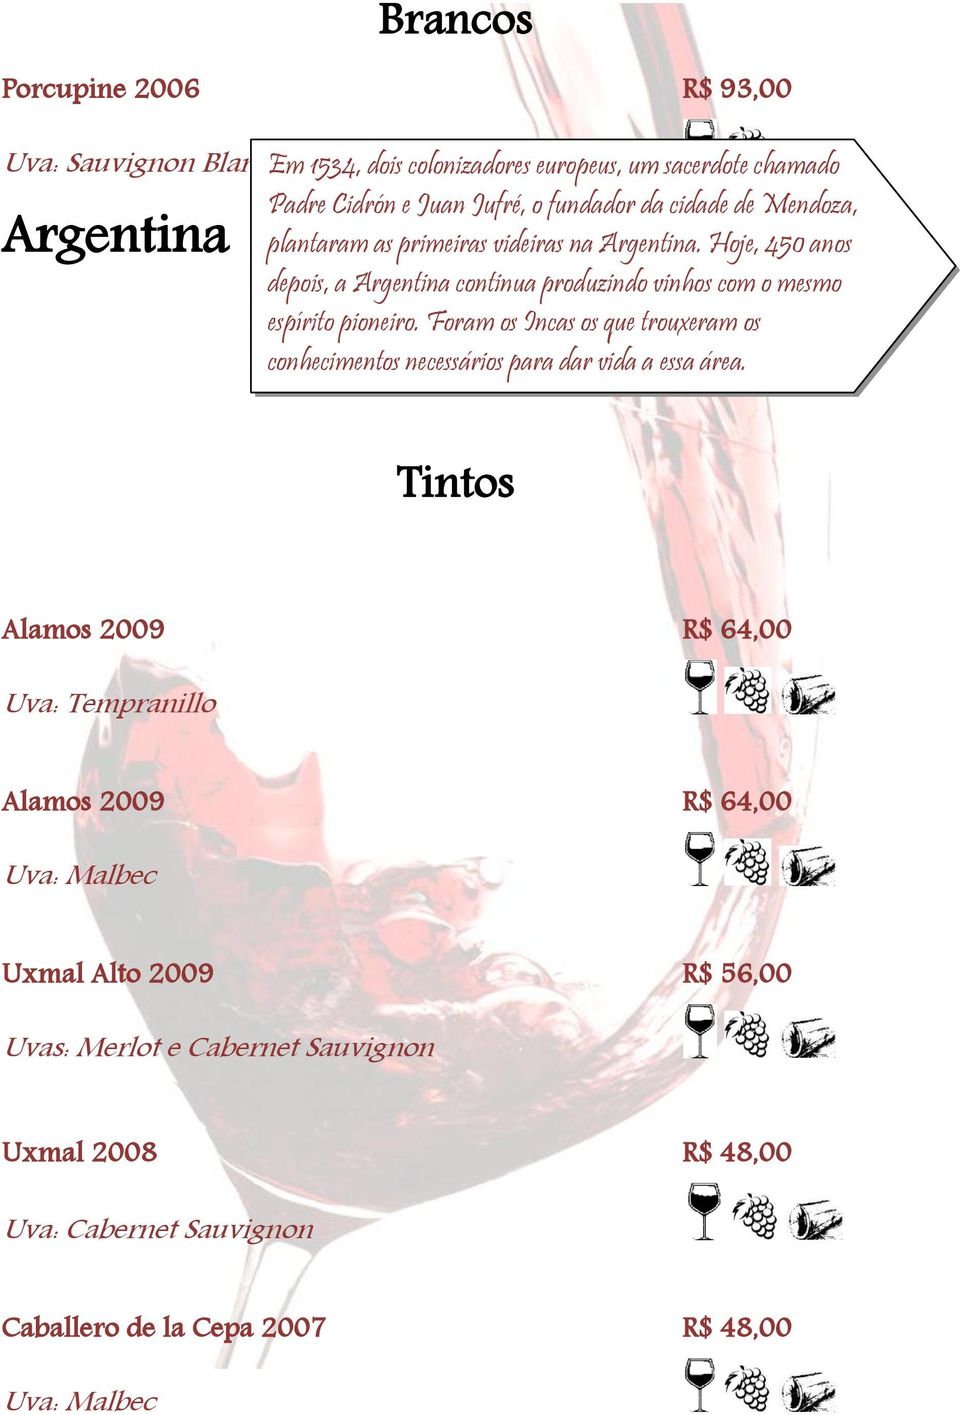 Hoje, 450 anos depois, a Argentina continua produzindo vinhos com o mesmo espírito pioneiro.